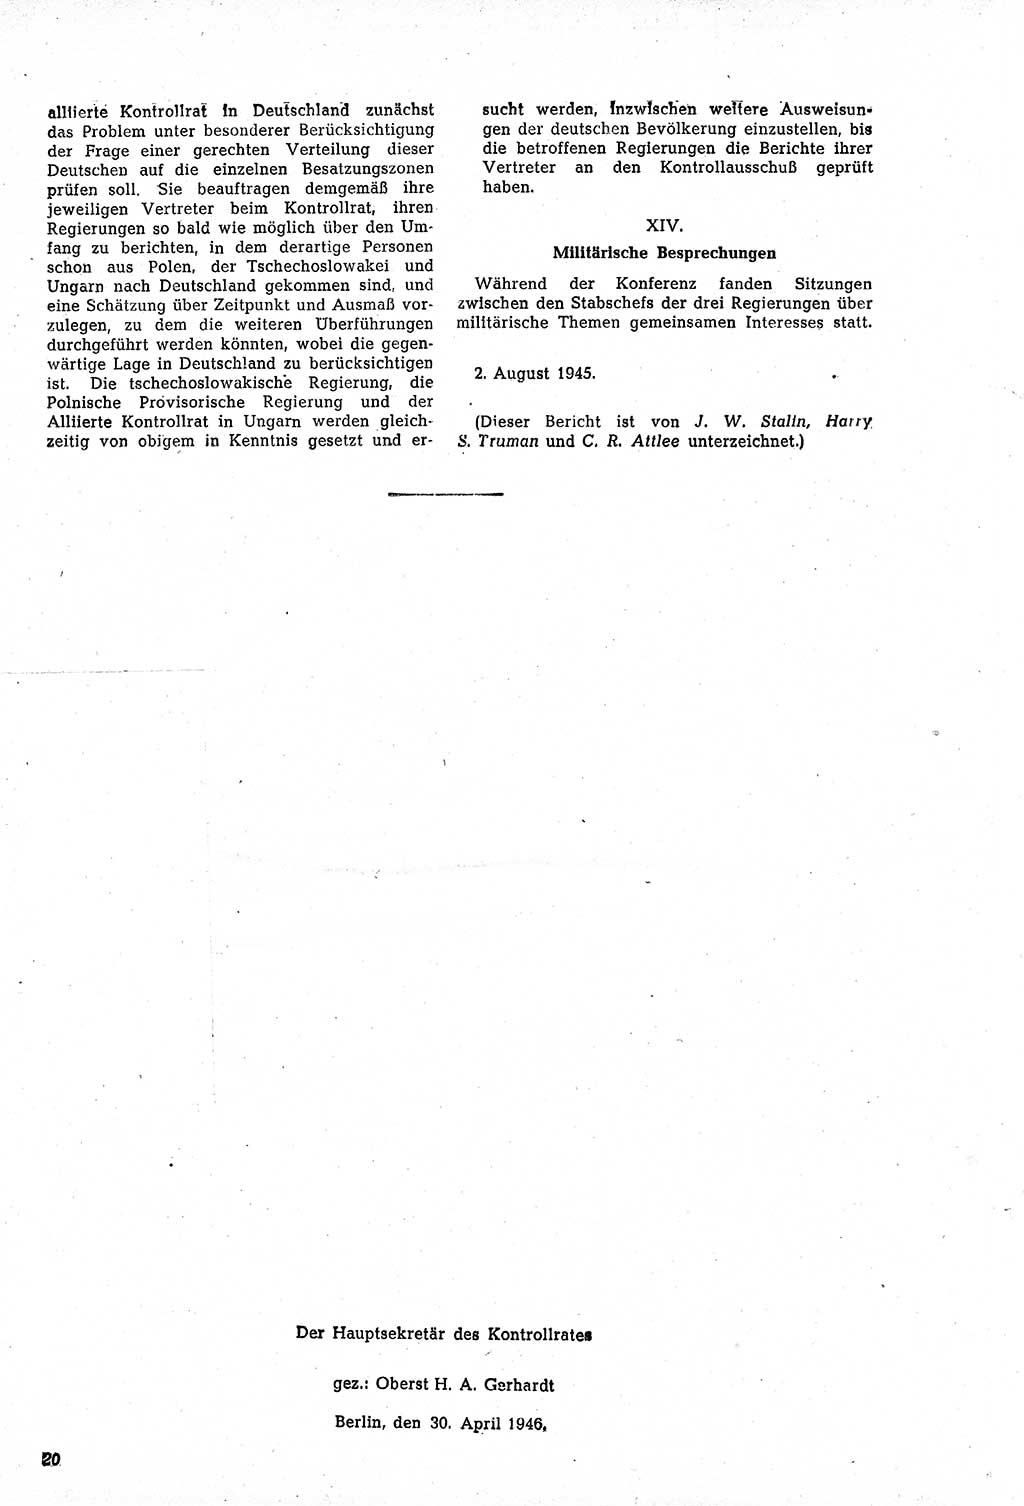 Amtsblatt des Kontrollrats (ABlKR) in Deutschland, Ergänzungsblatt Nr. 1, Sammlung von Urkunden betreffend die Errichtung der Alliierten Kontrollbehörde 1945, Seite 20 (ABlKR Dtl., Erg. Bl. 1 1945, S. 20)